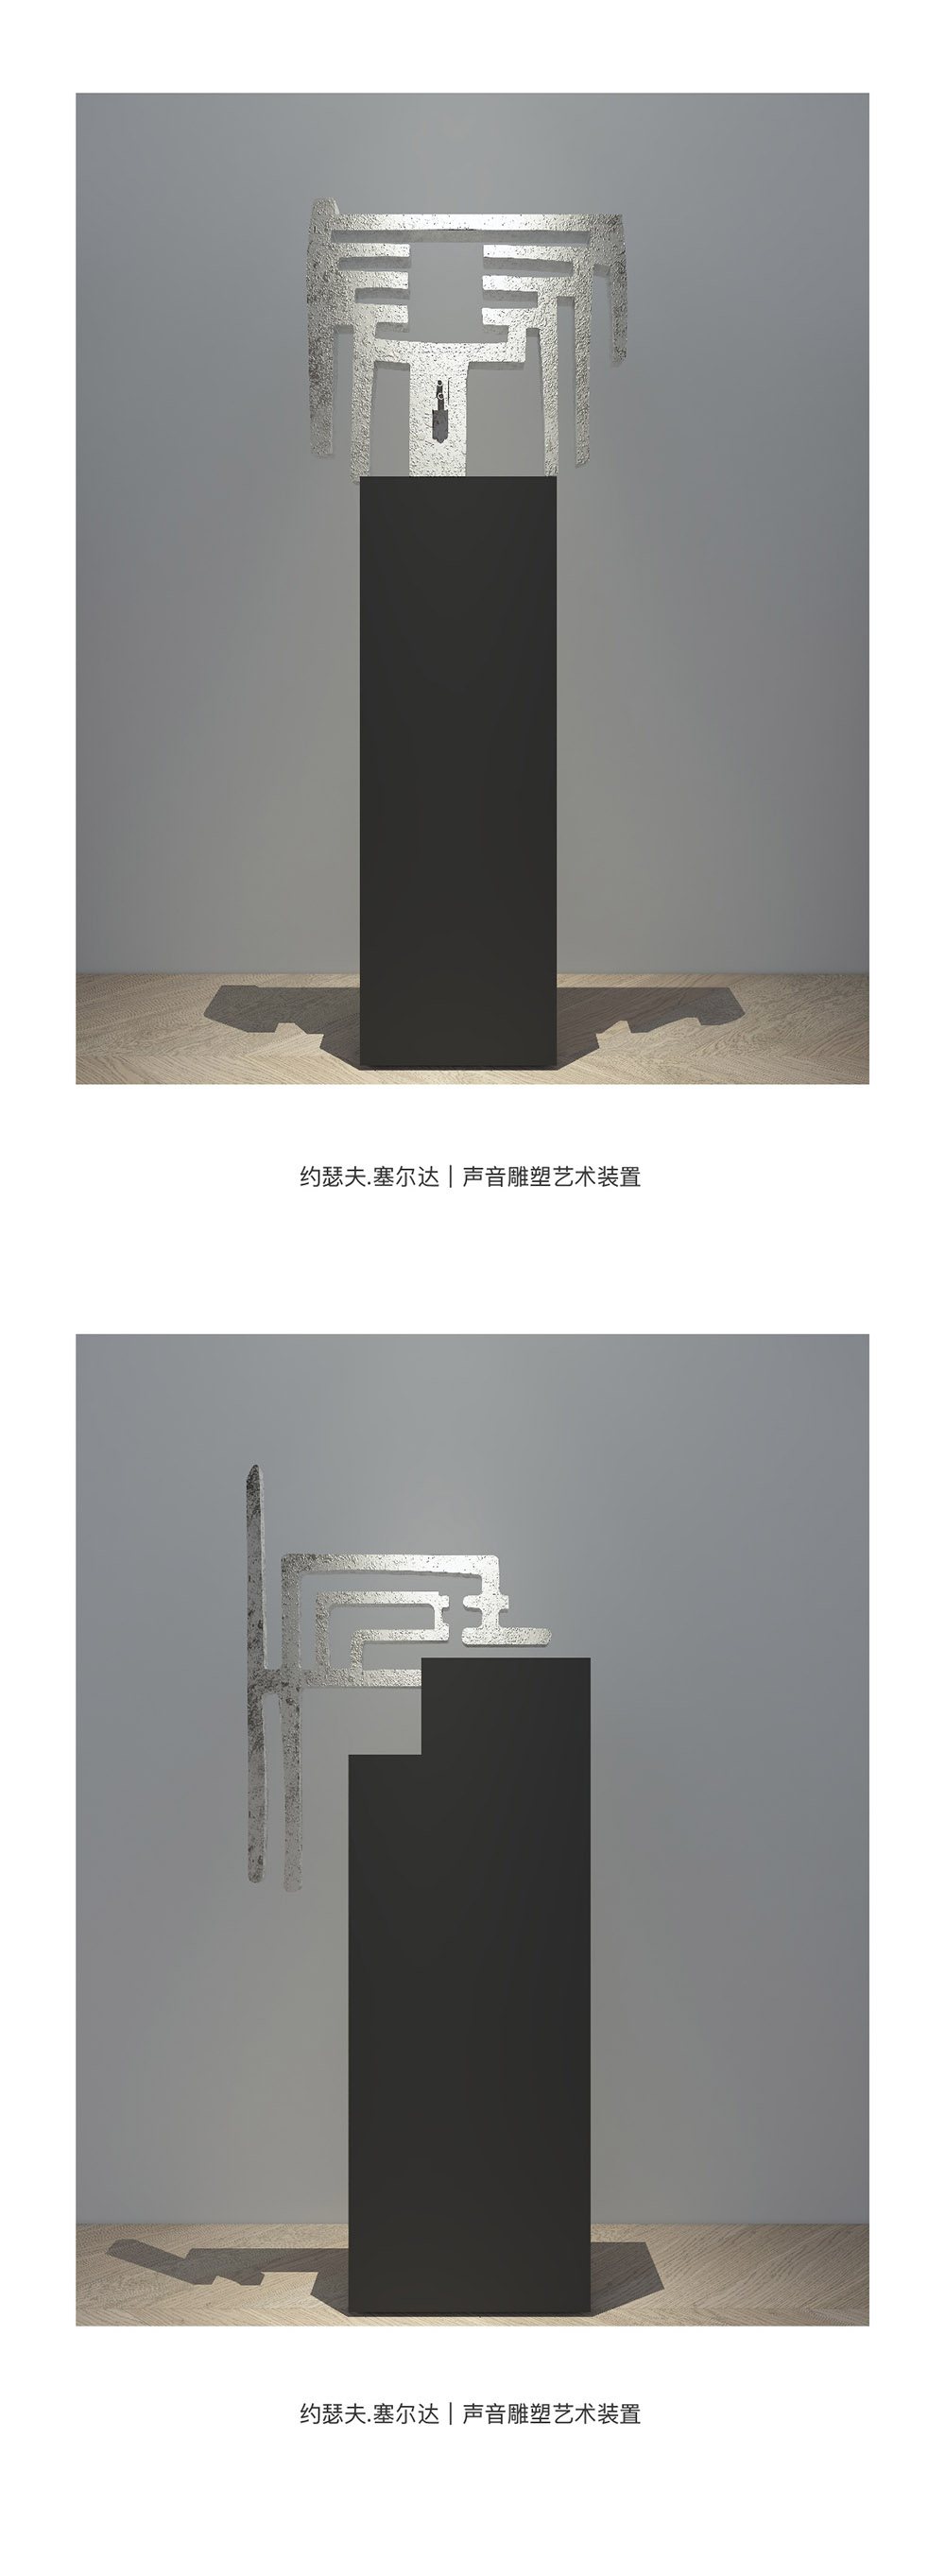 【深圳站】高迪之声——传奇建筑艺术大师高迪中国特展